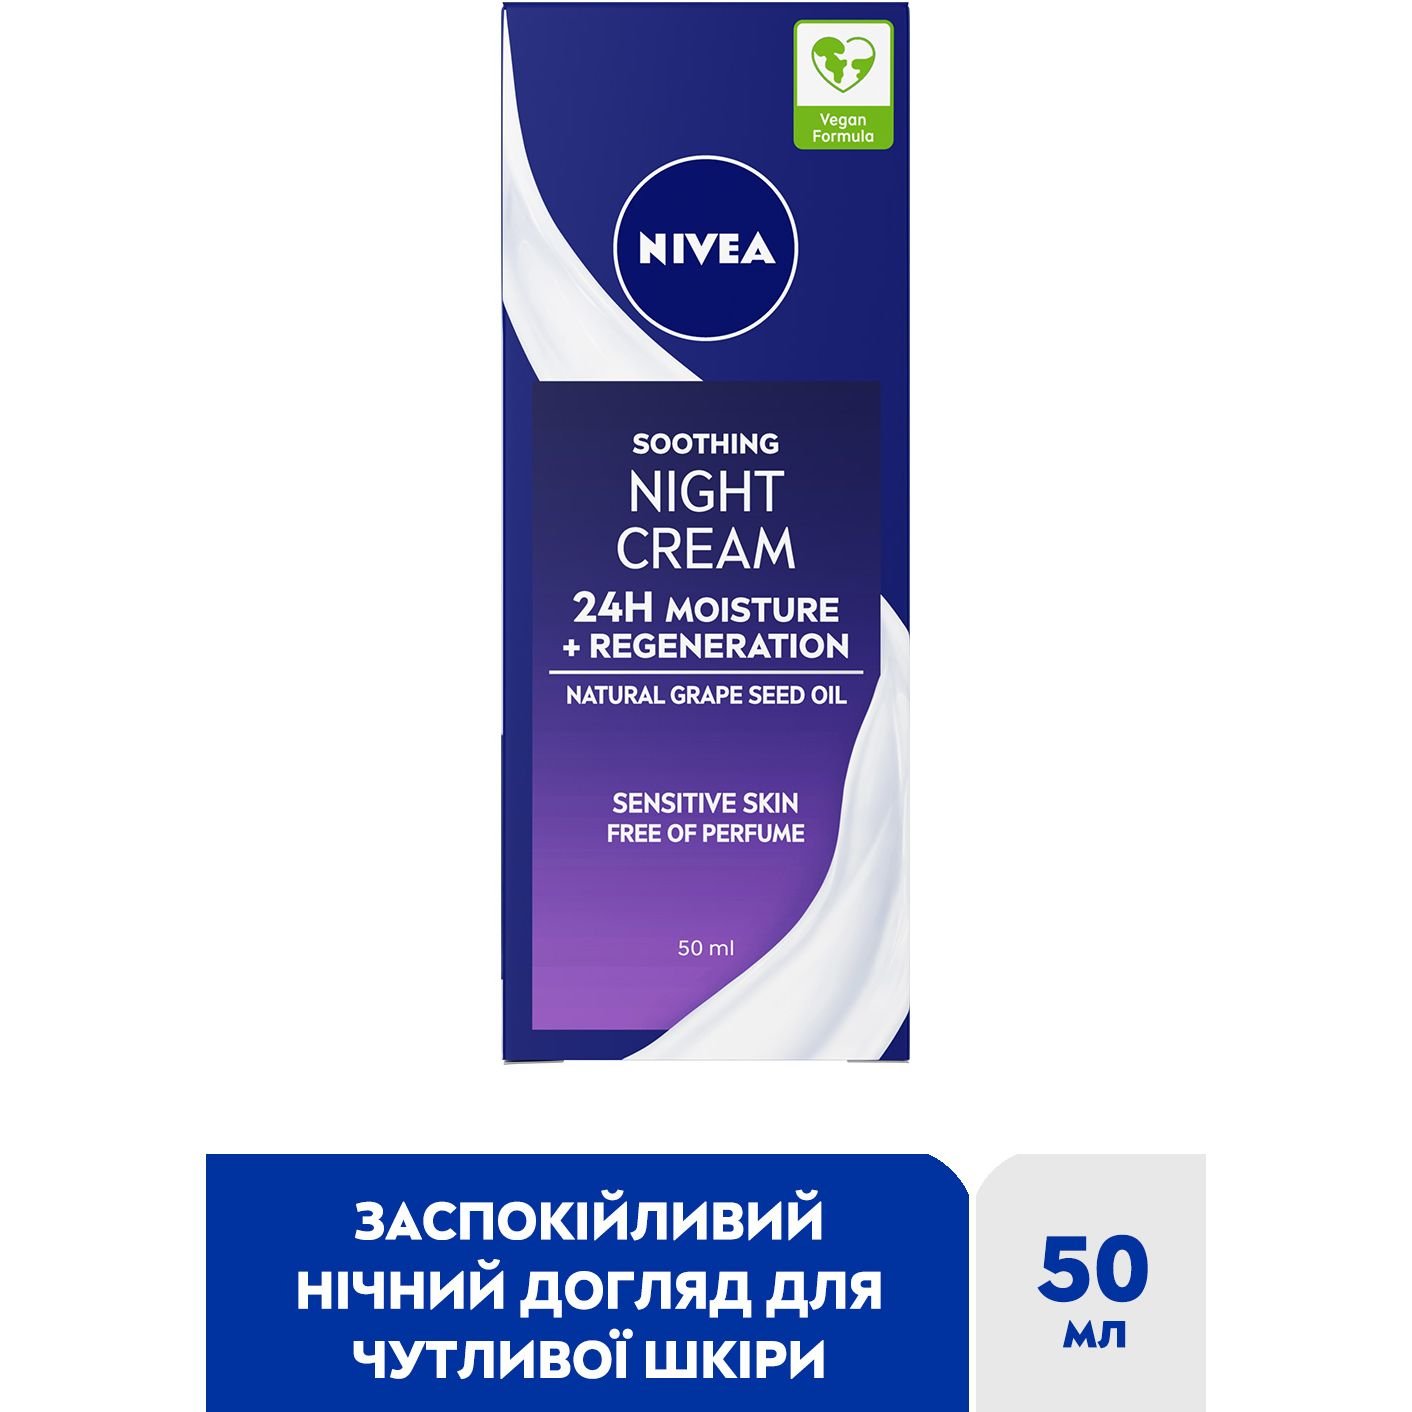 Ночной успокаивающий крем Nivea Интенсивное увлажнение и регенерация 24 часа, 50 мл - фото 2